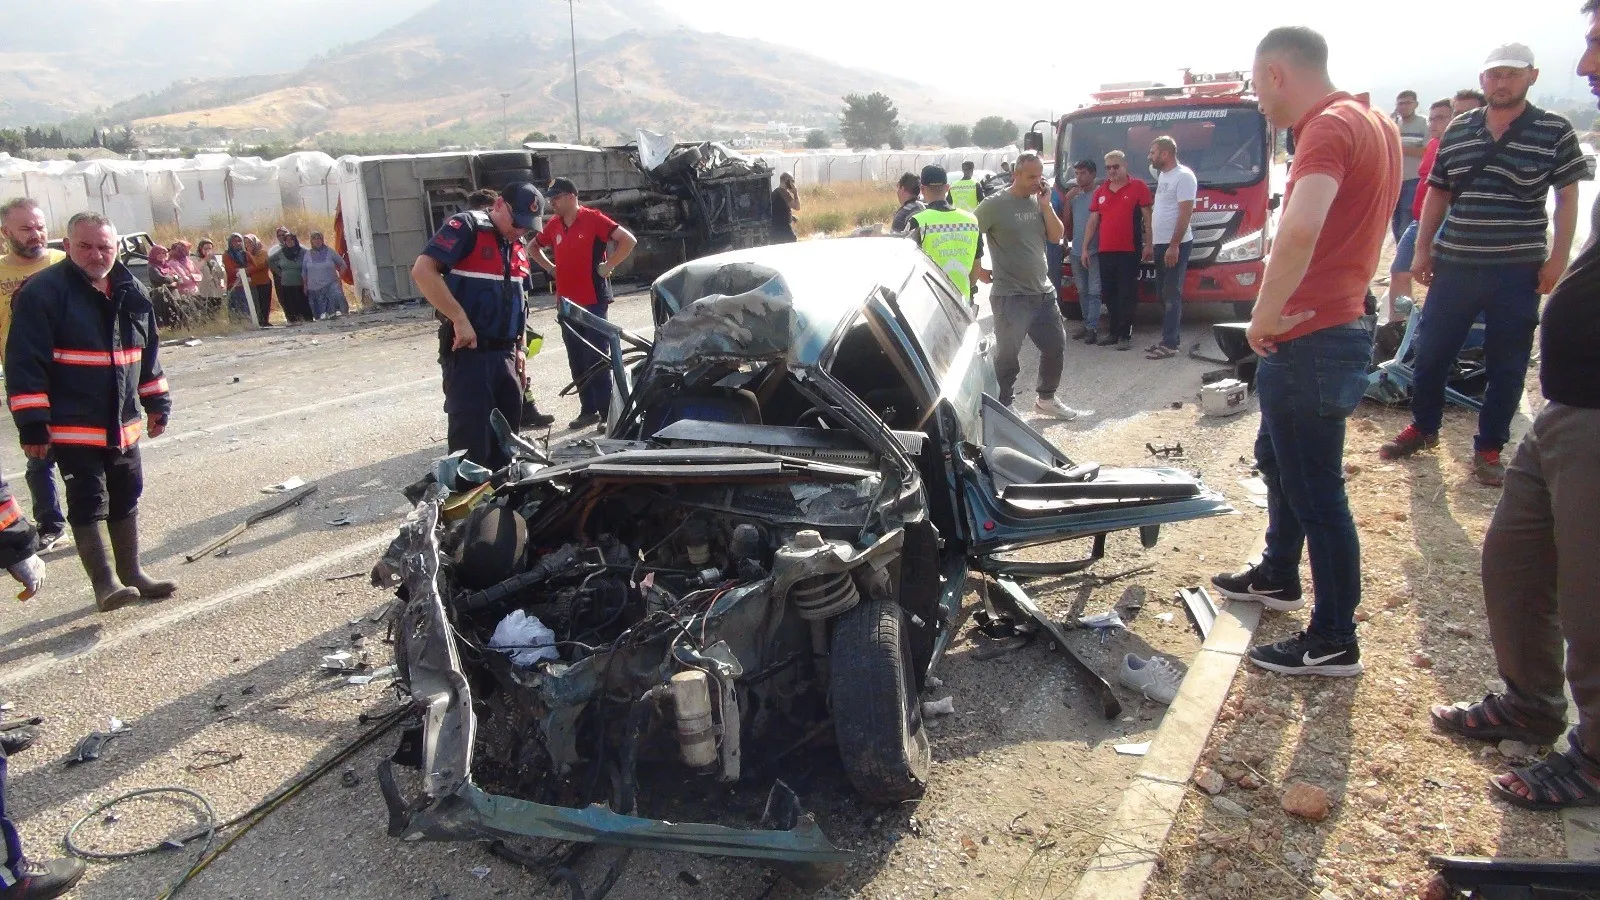 Mersin'de Otobüslerin Karıştığı Zincirleme Kaza 2 Ölü, 35 Yaralı